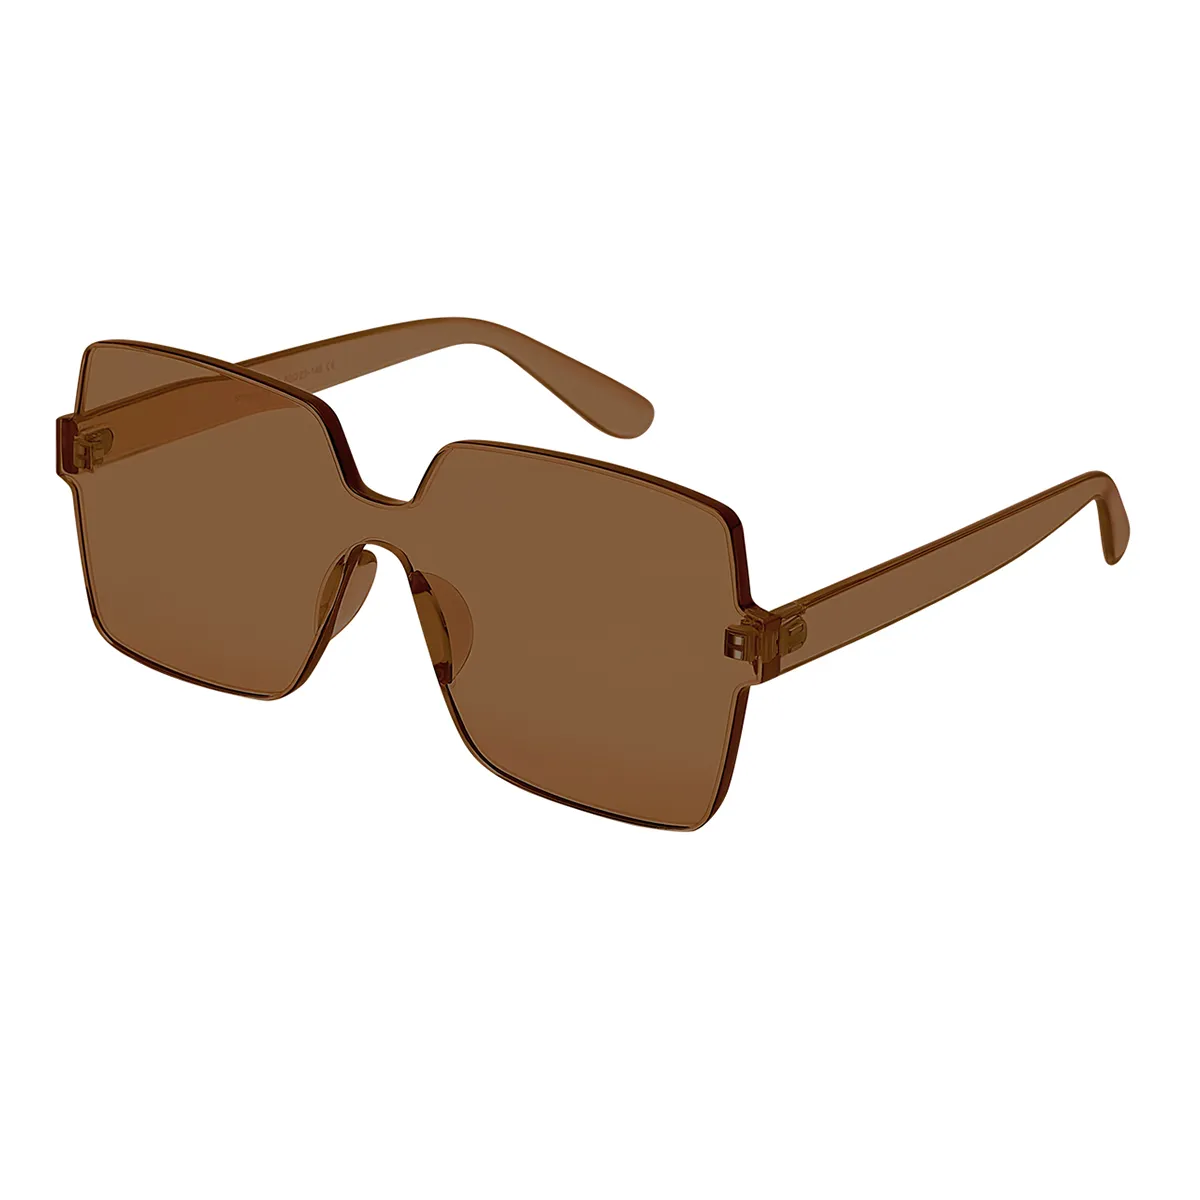 Macy - Geometric Tawny Sunglasses for Women